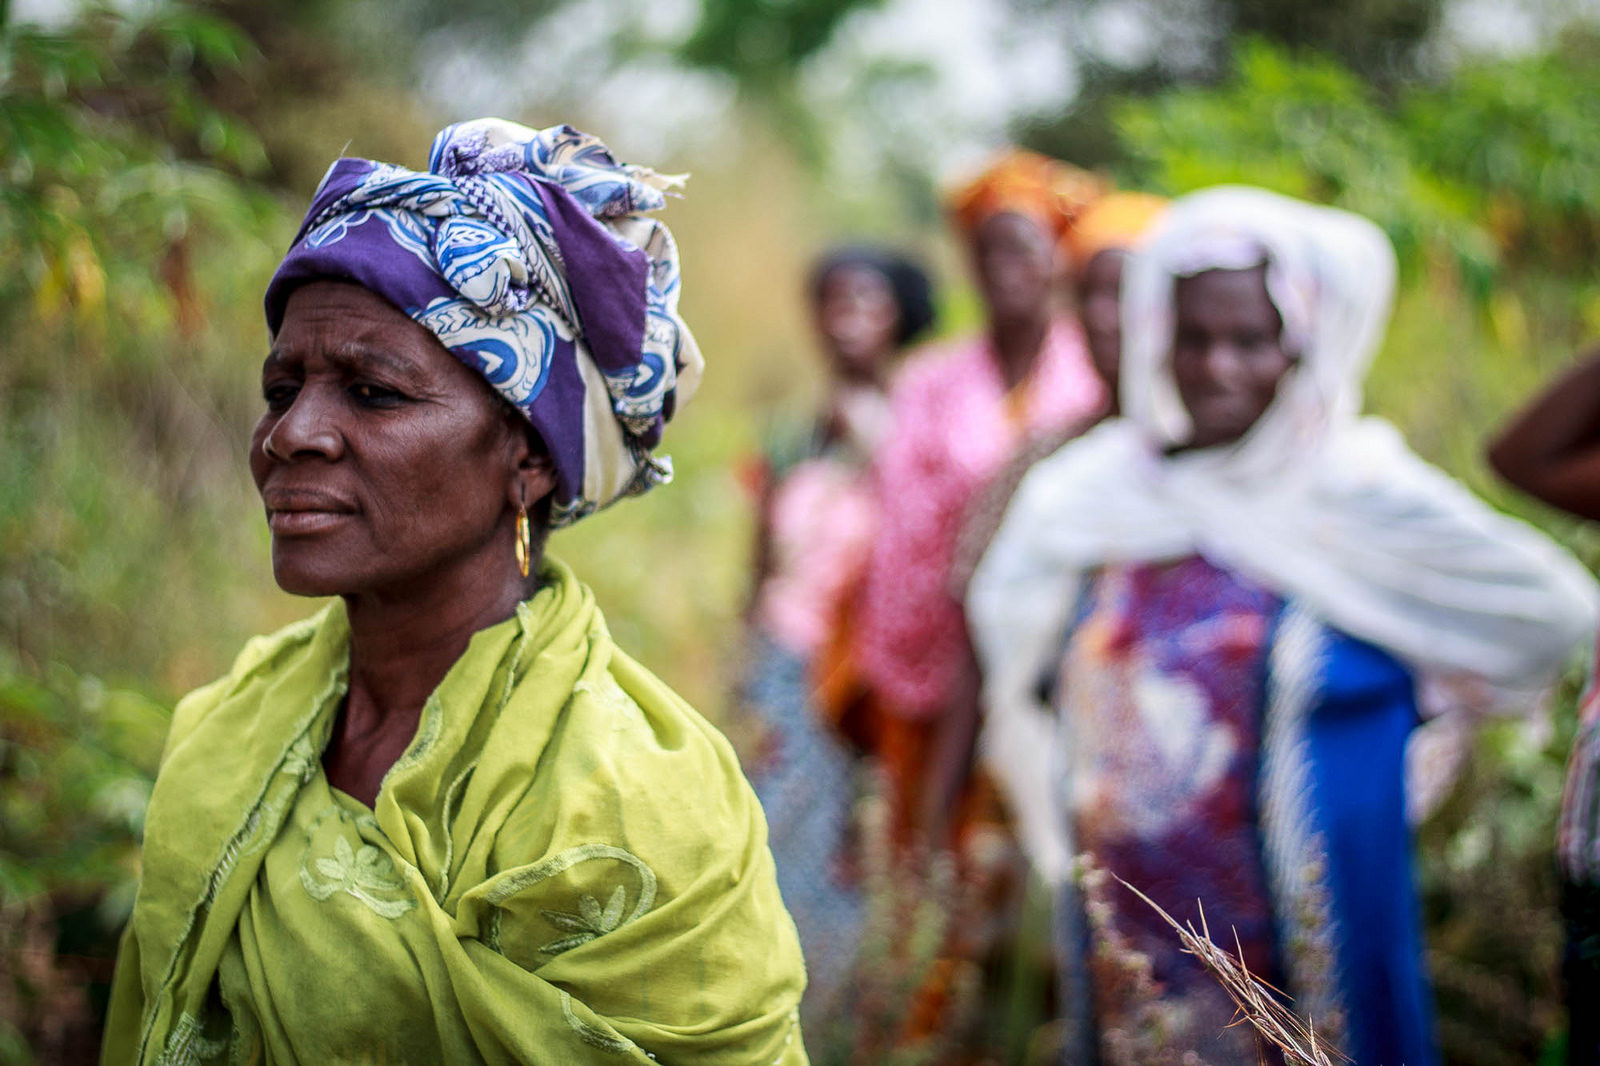 Women walking in a field in Africa